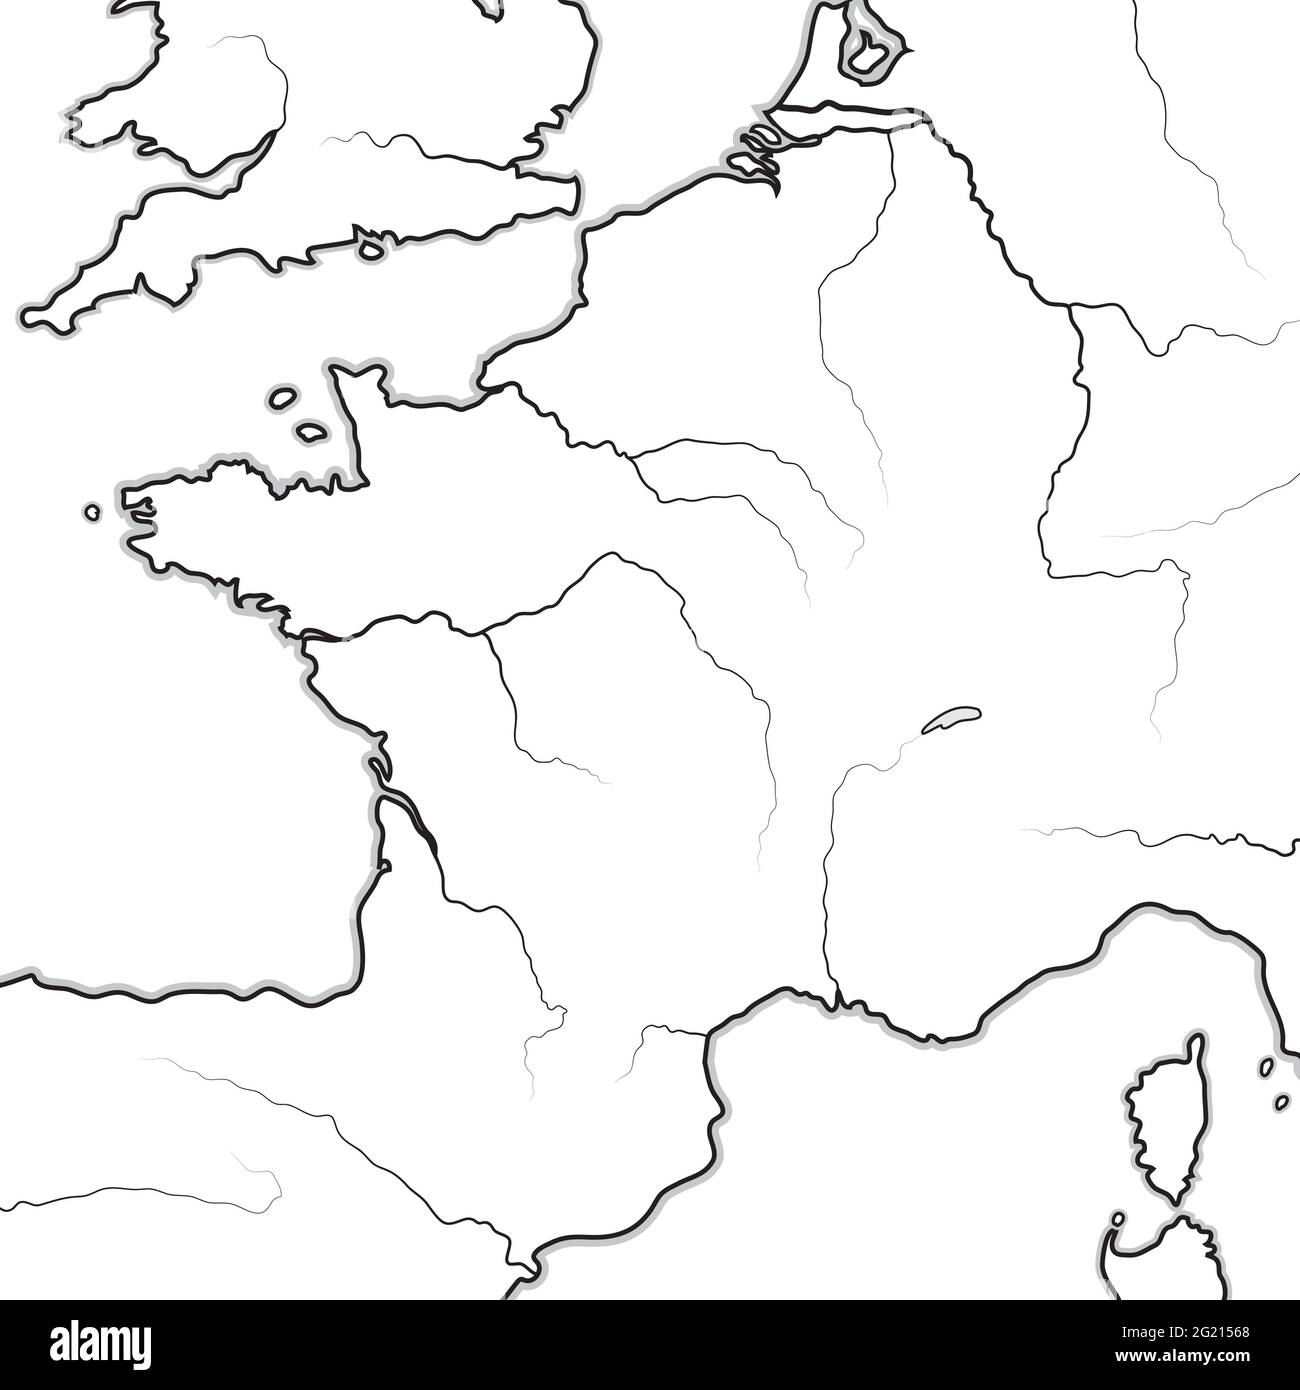 Mappa delle terre FRANCESI: Francia, Provenza, Normandia, Occitanie, Aquitania, Lorena. Grafico geografico. Illustrazione Vettoriale